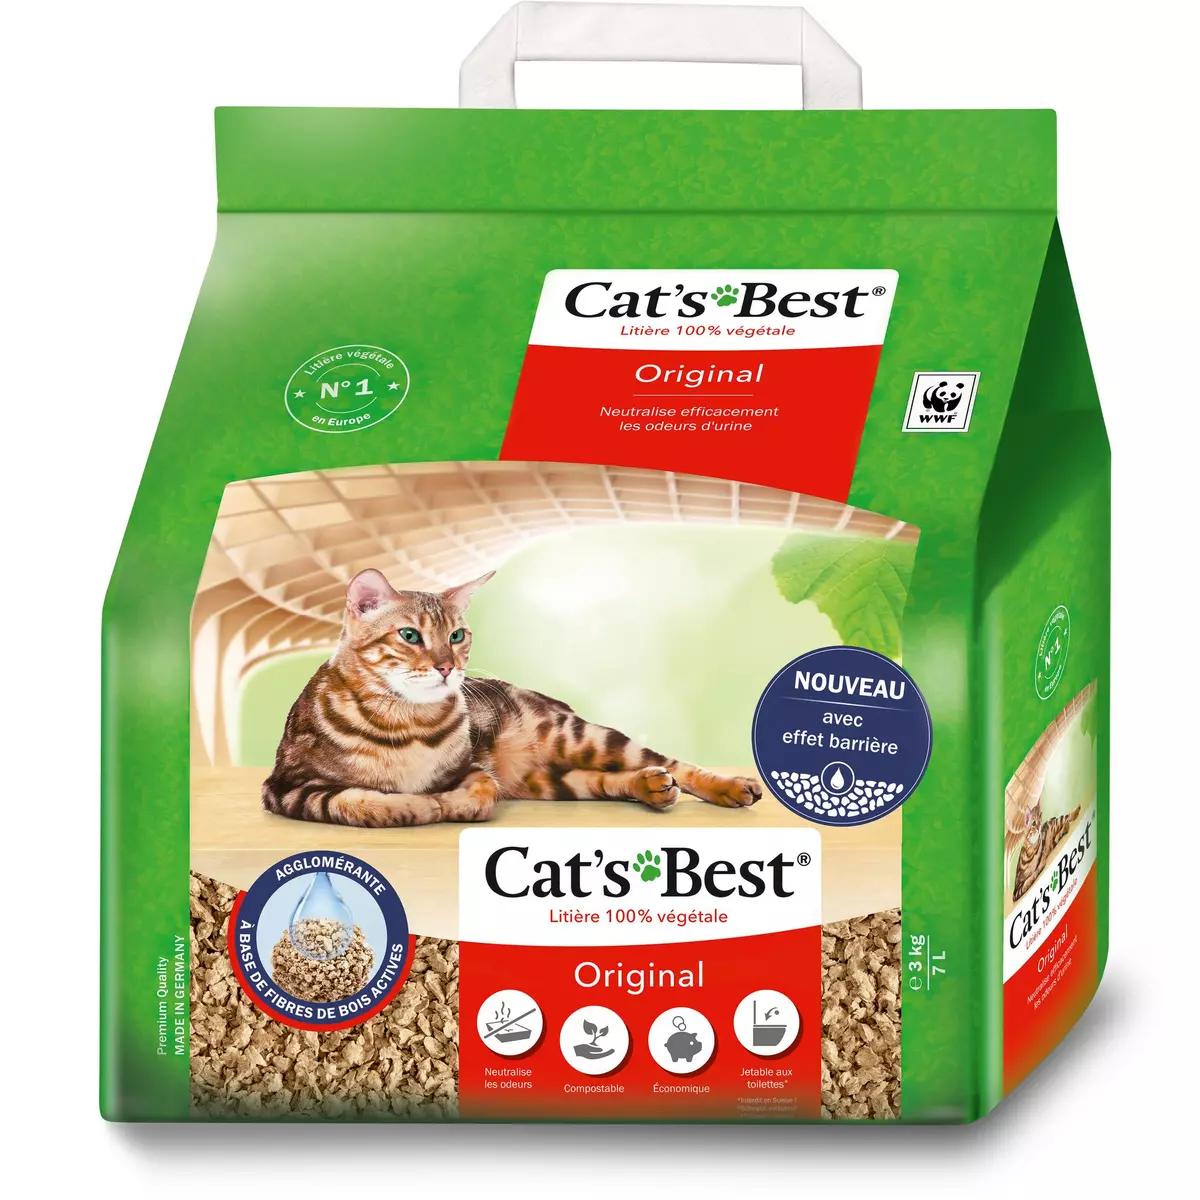 CAT'S BEST Litière 100% végétale original pour chat 3kg